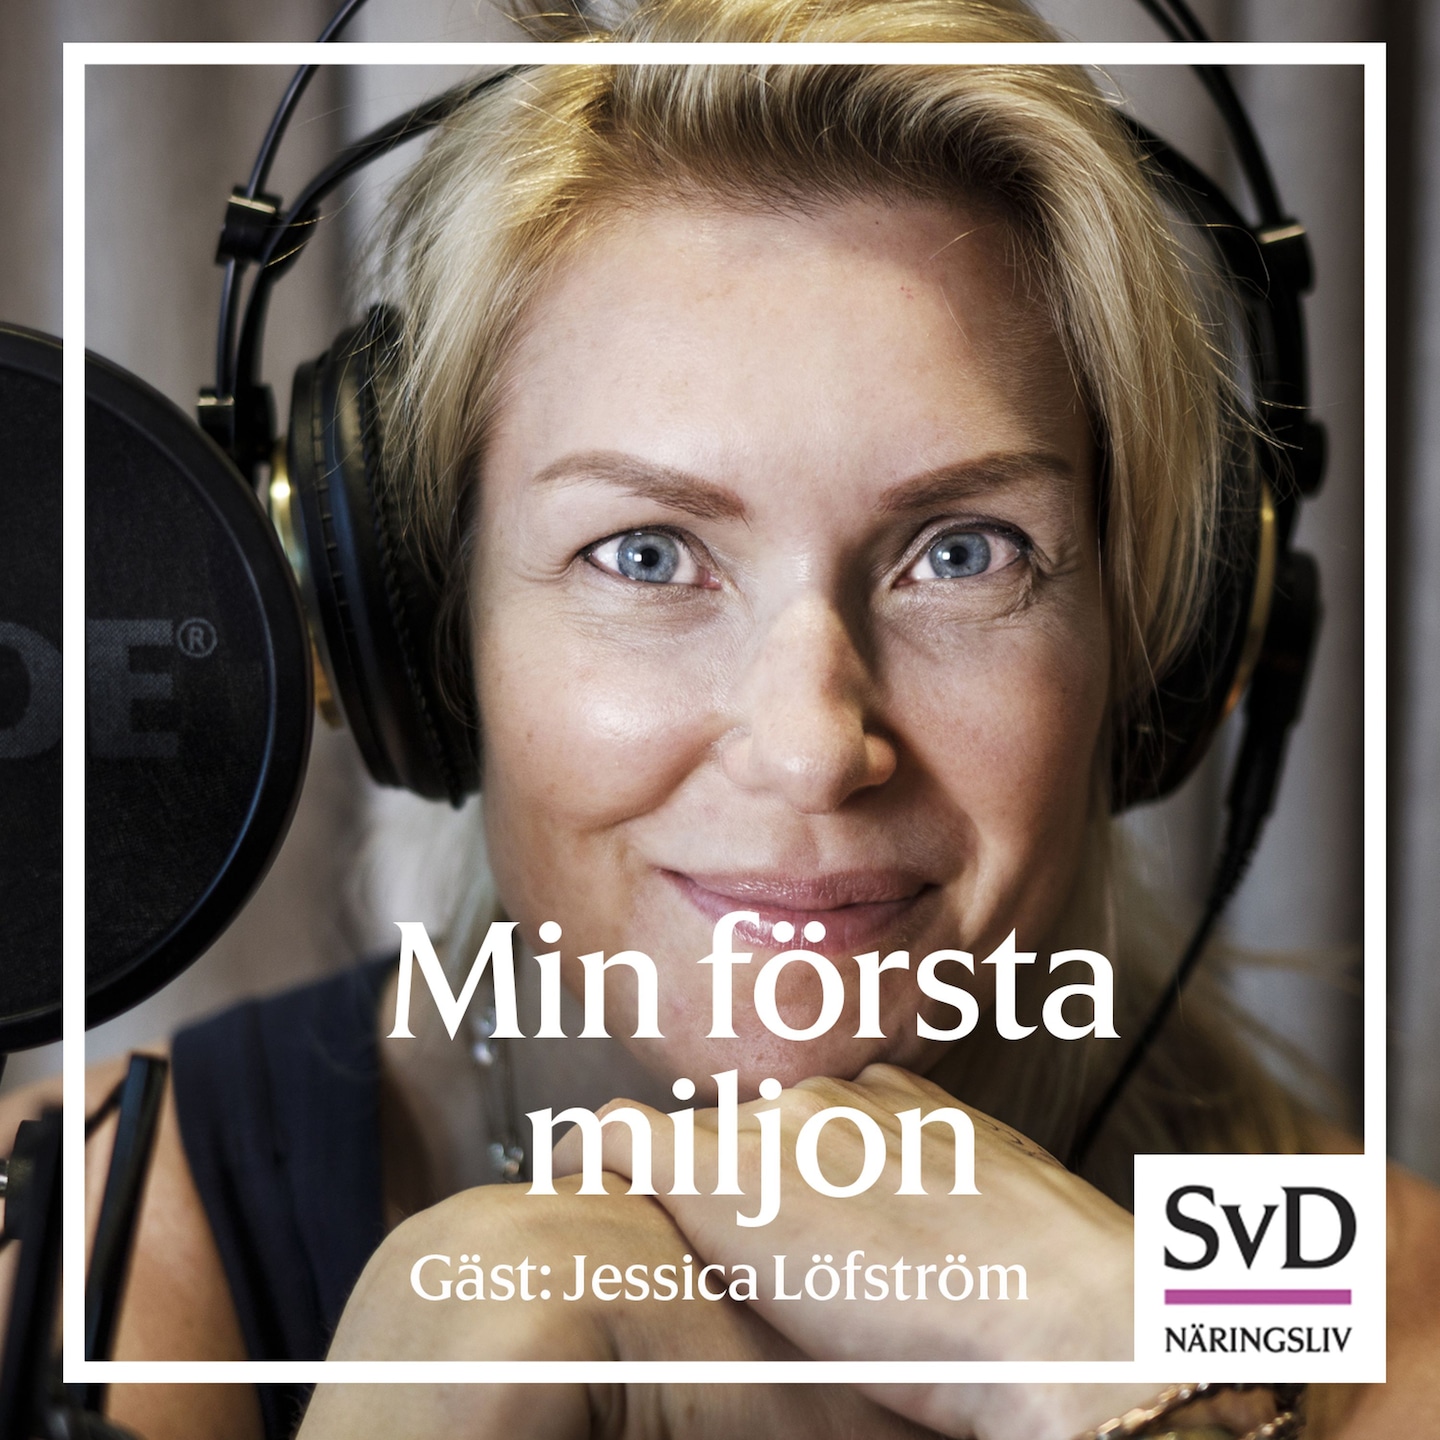 23. Jessica Löfström - prisad entreprenör som började med att hyra ut snygga kompisar till ICA.